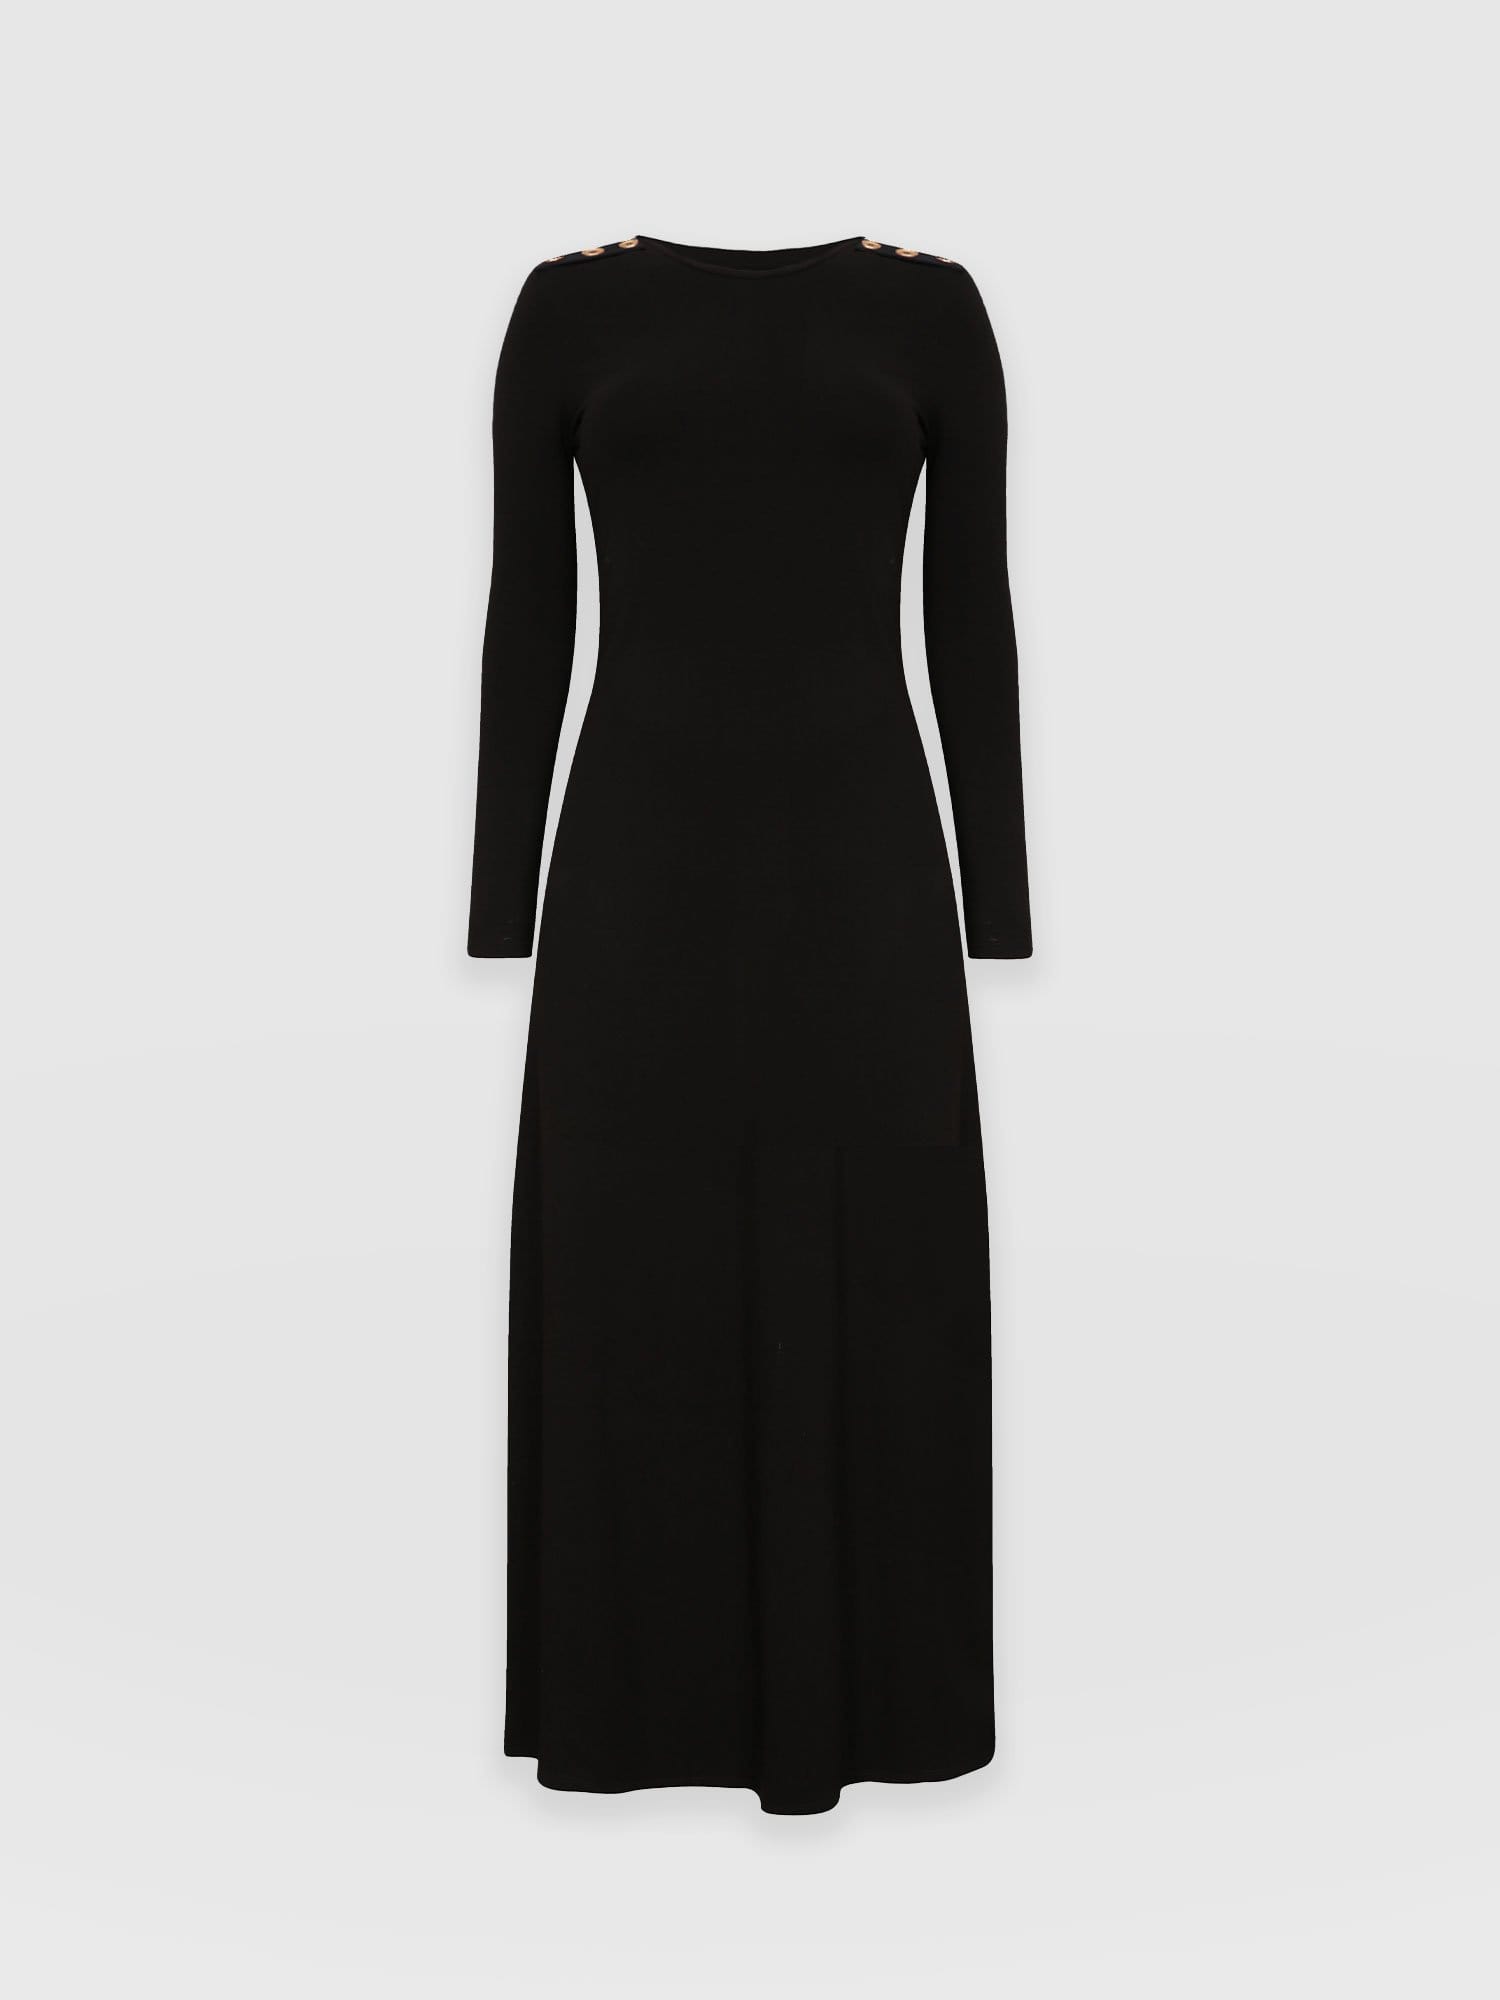 Black Dresses For Women | Fit & Flare, Straight & More | Hobbs London |